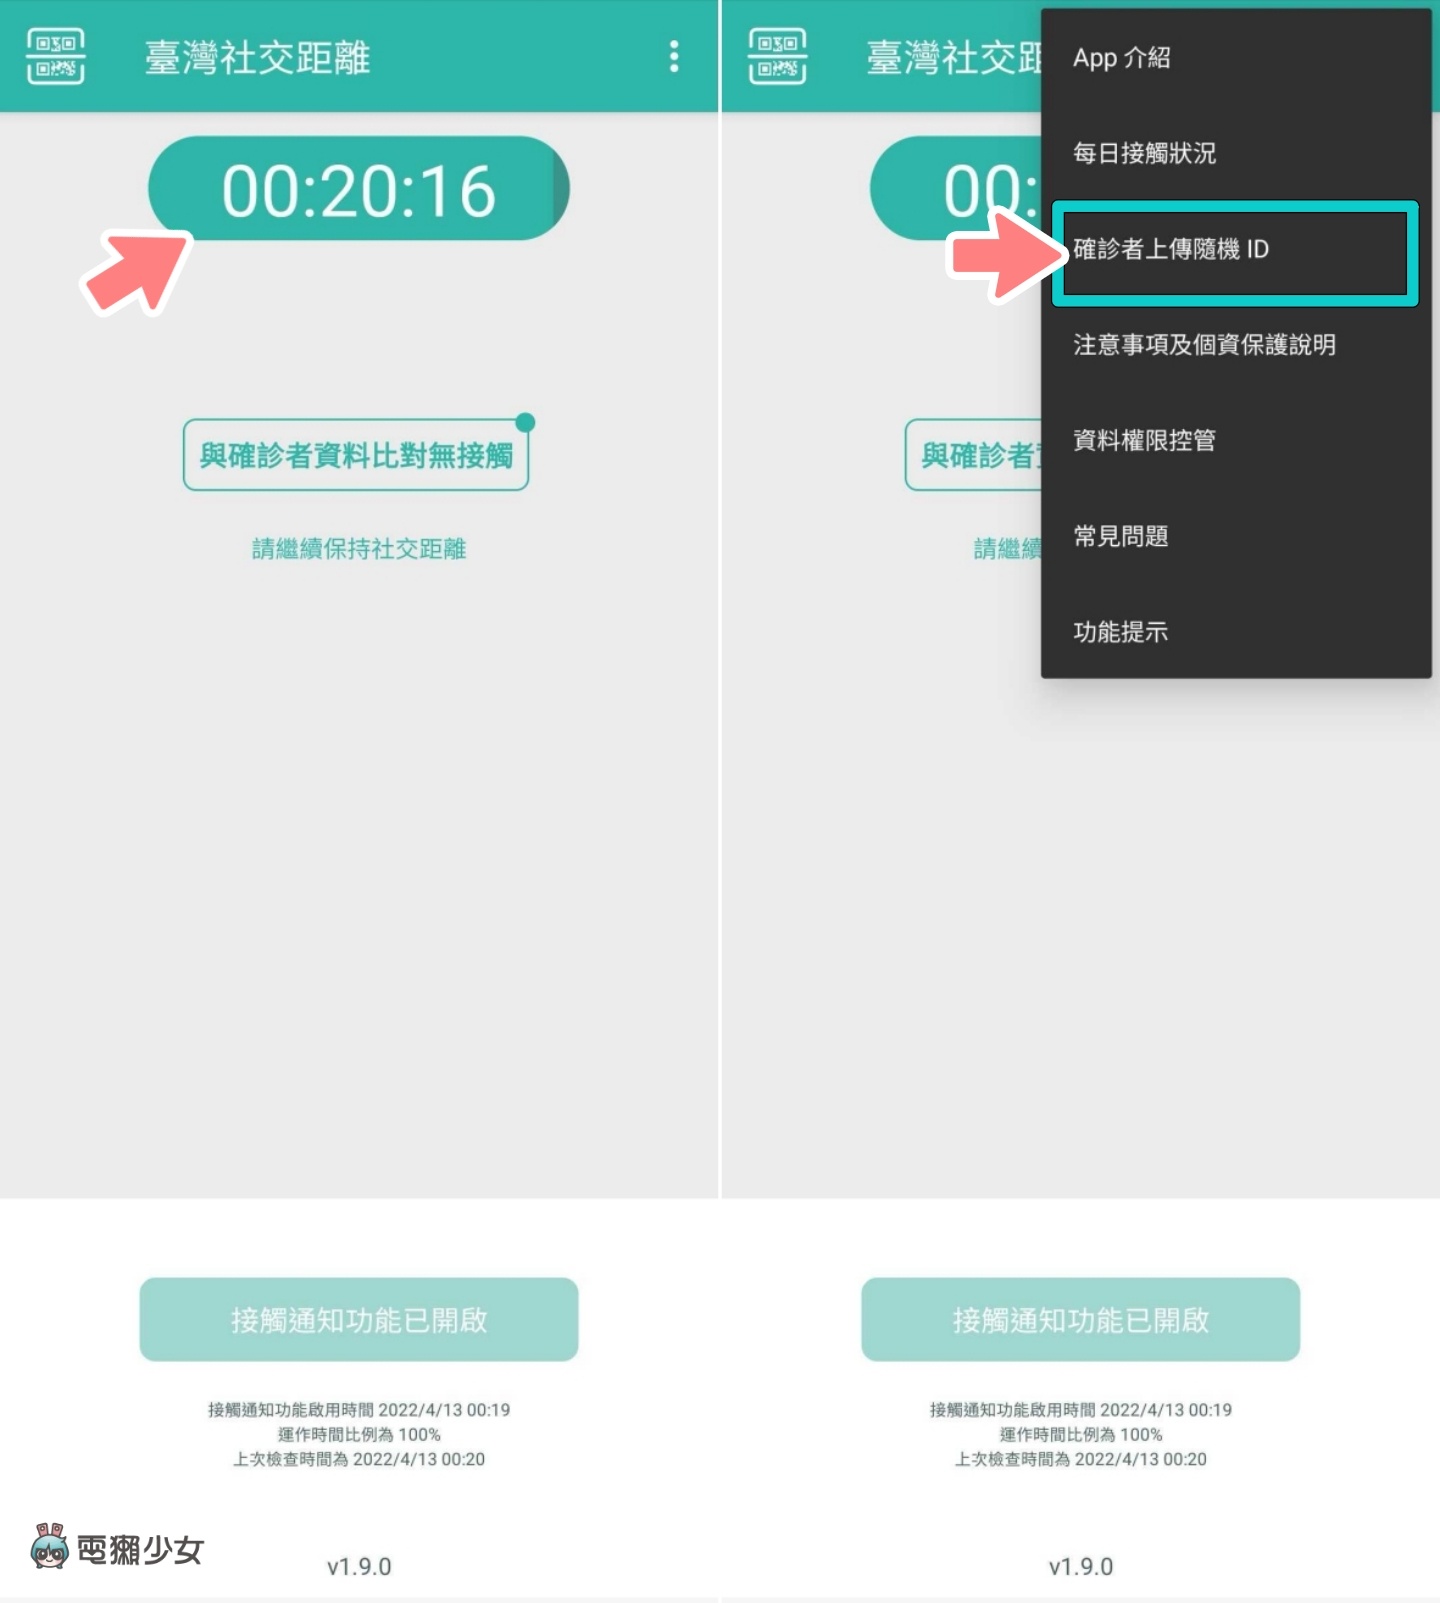 『 臺灣社交距離 』推出更新！至特定場域出示 App 畫面可免掃簡訊實聯制